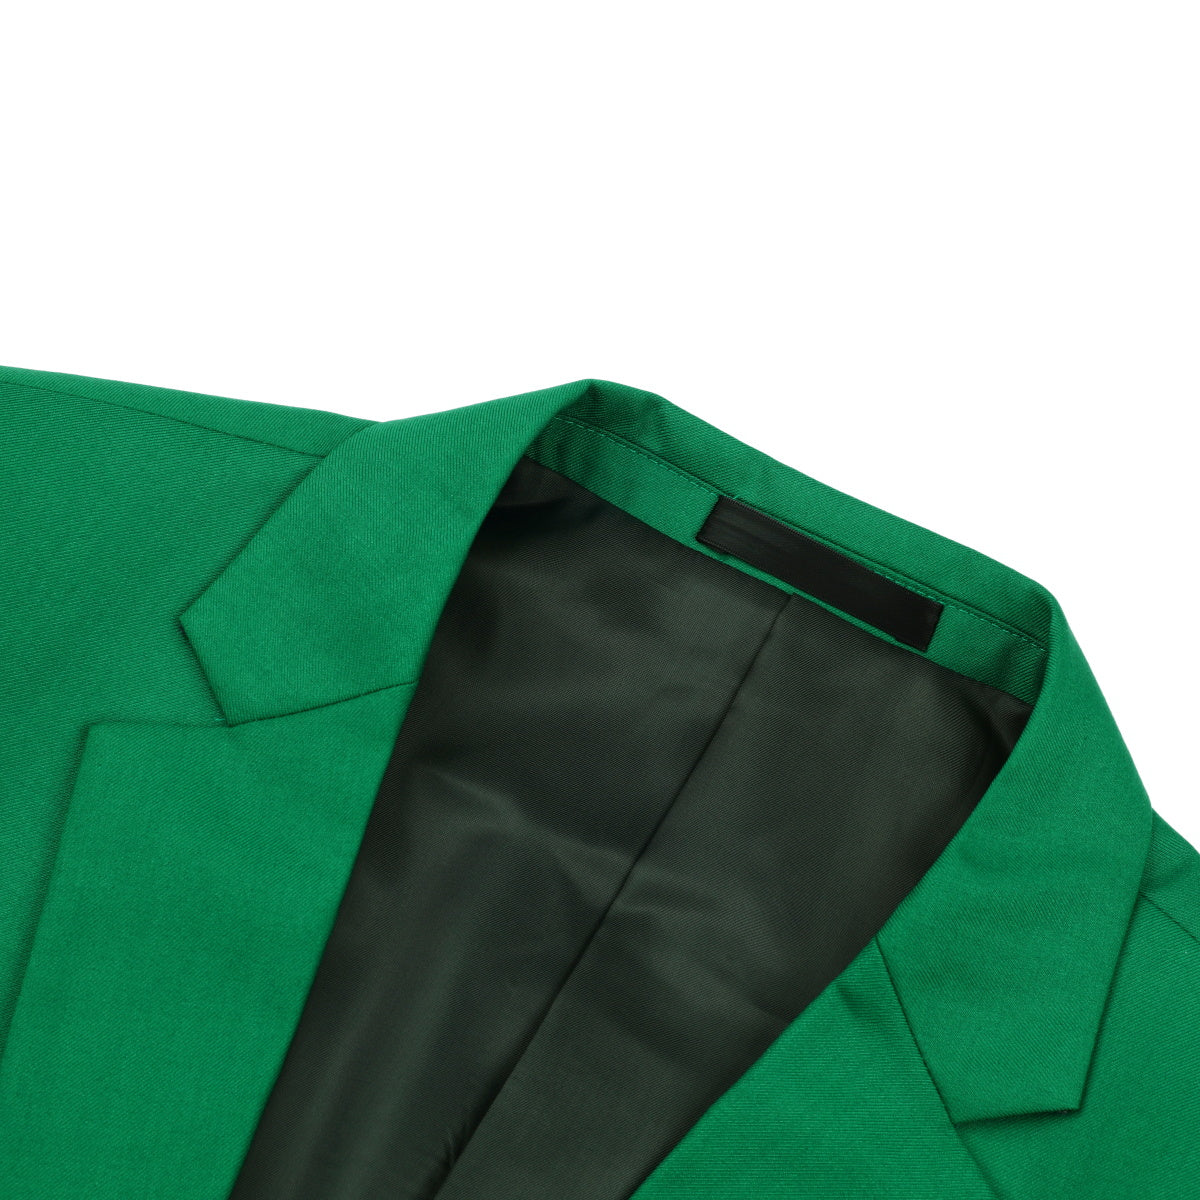 Fashion Jakcket One Button Casual Blazer Green